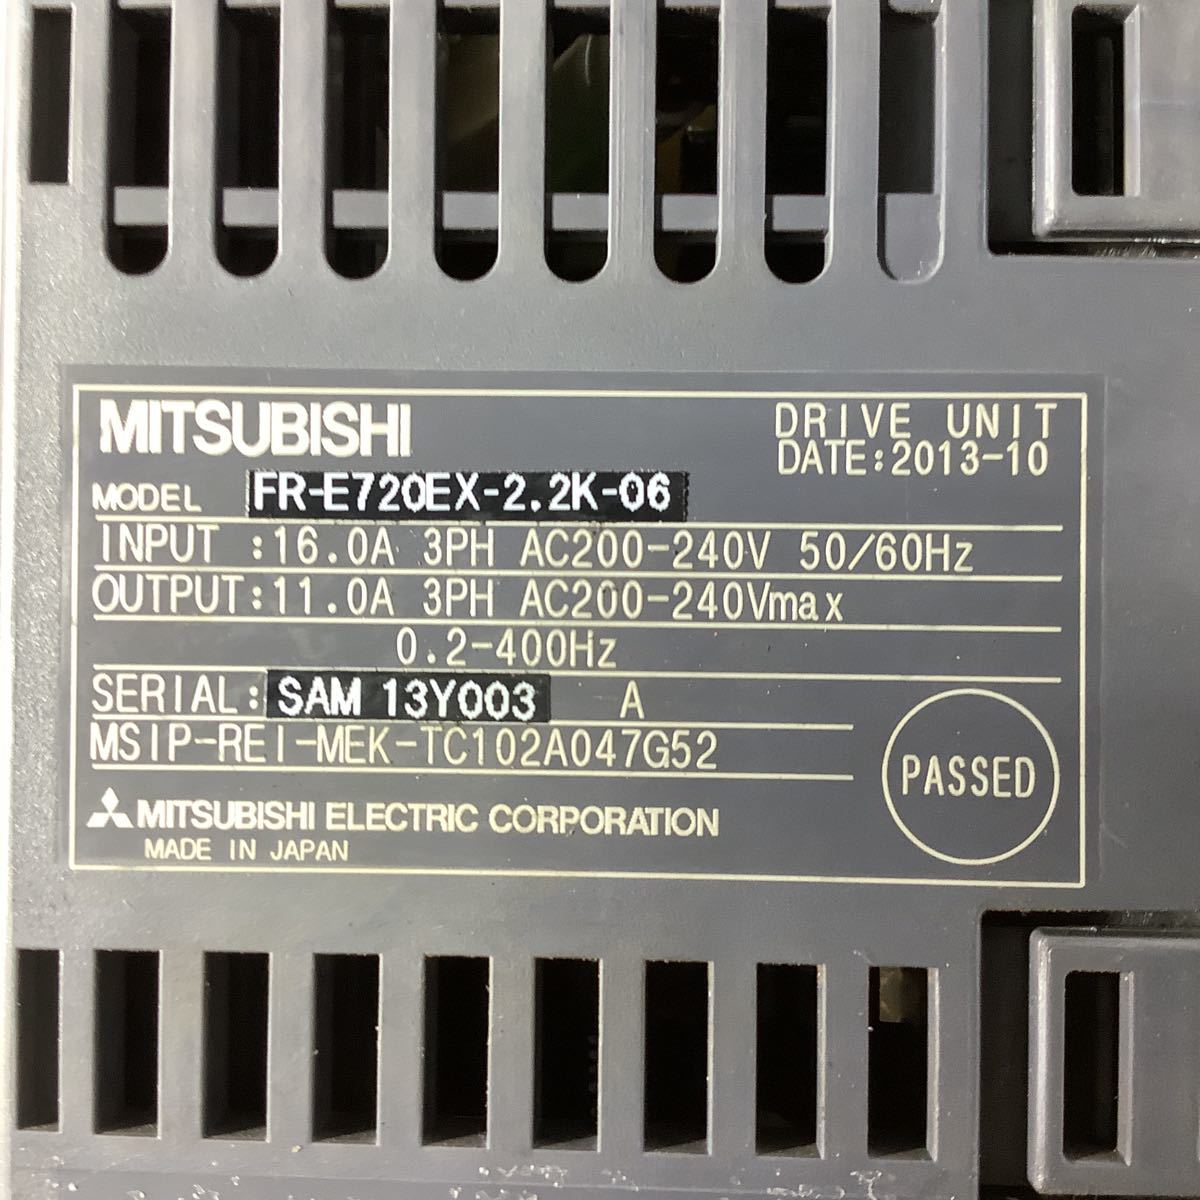 三菱 MITSUBISHI インバーター FRー E720 EXー2、2kー06 中古品一般的な通電までです。動作は未確認です。_画像3